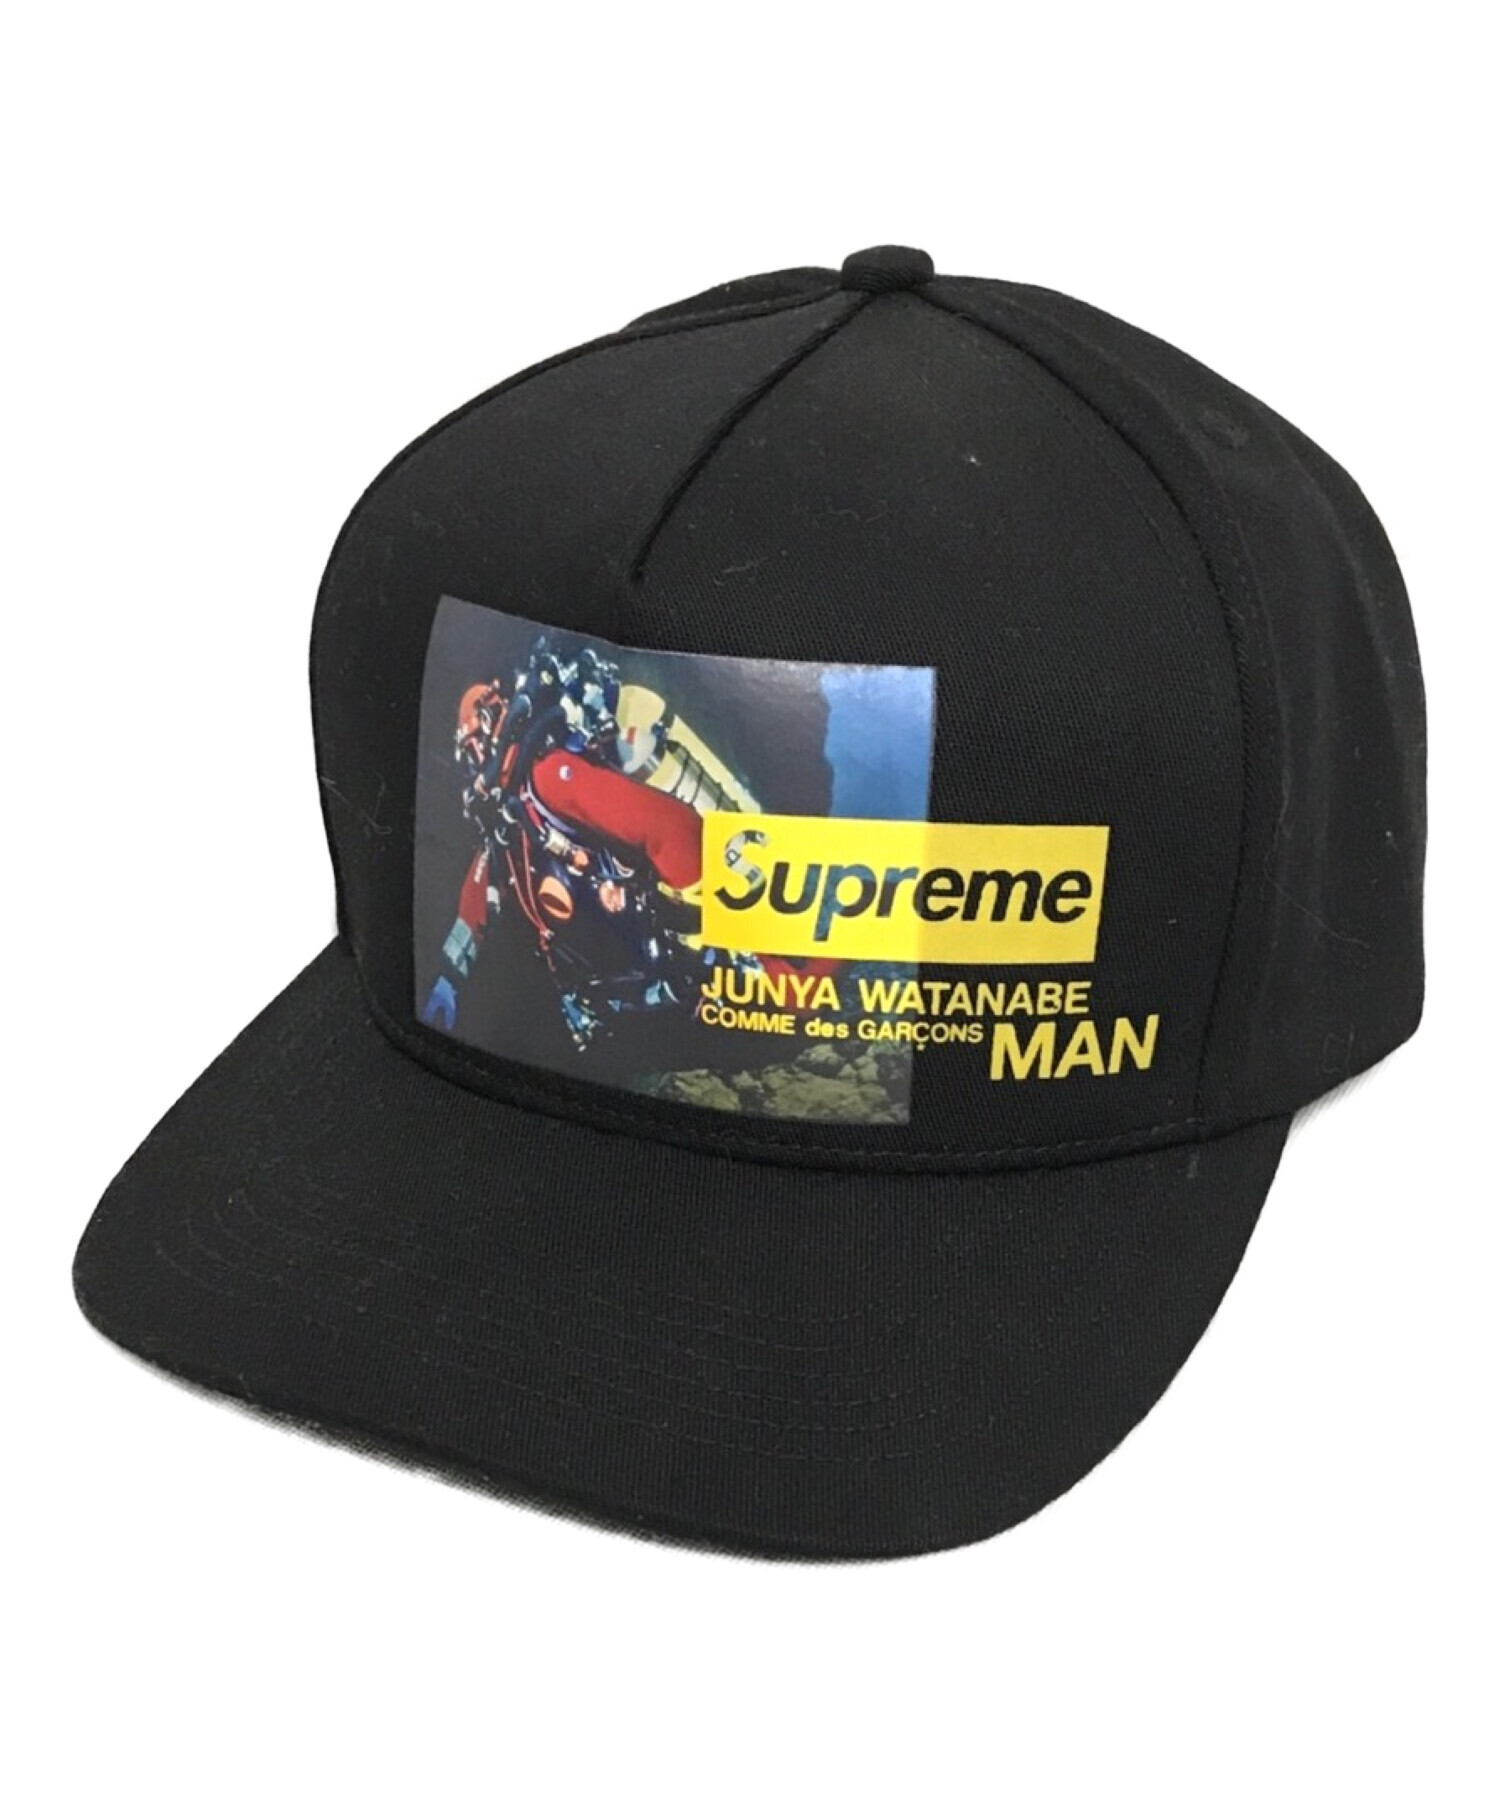 Supreme / JUNYA WATANABE Cap